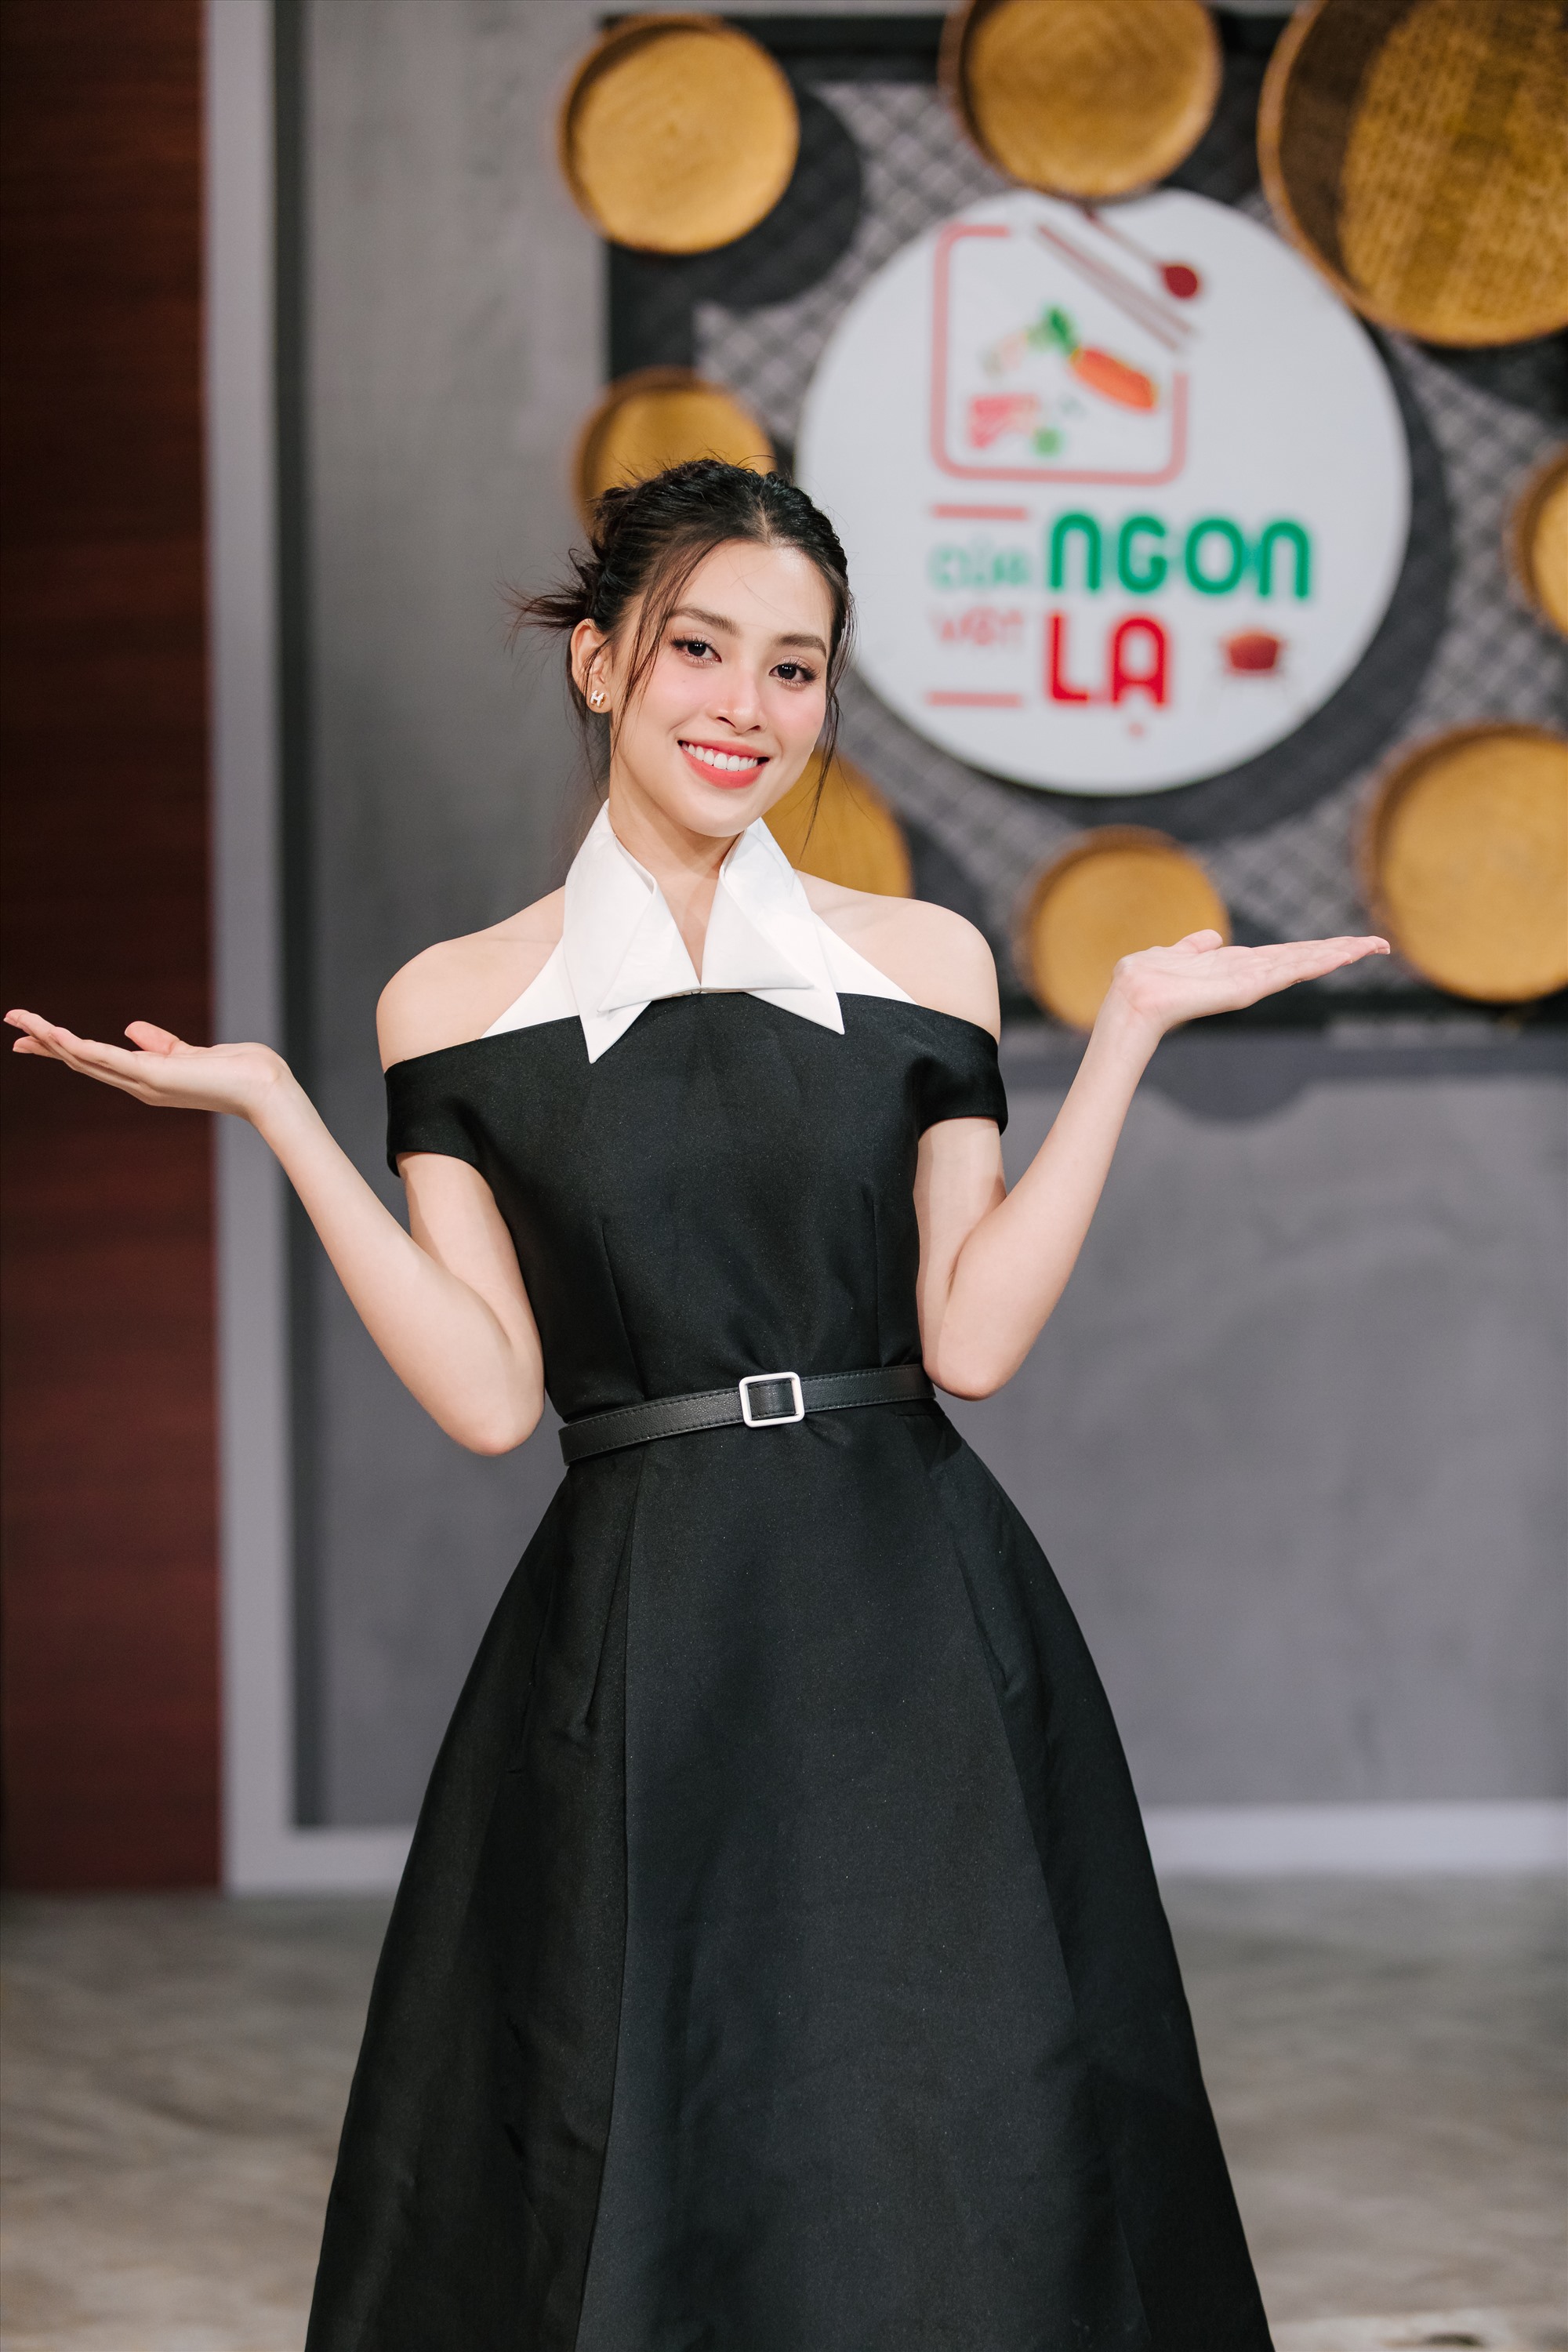 Hoa hậu Tiểu Vy làm giám khảo chương trình. Ảnh: VTV